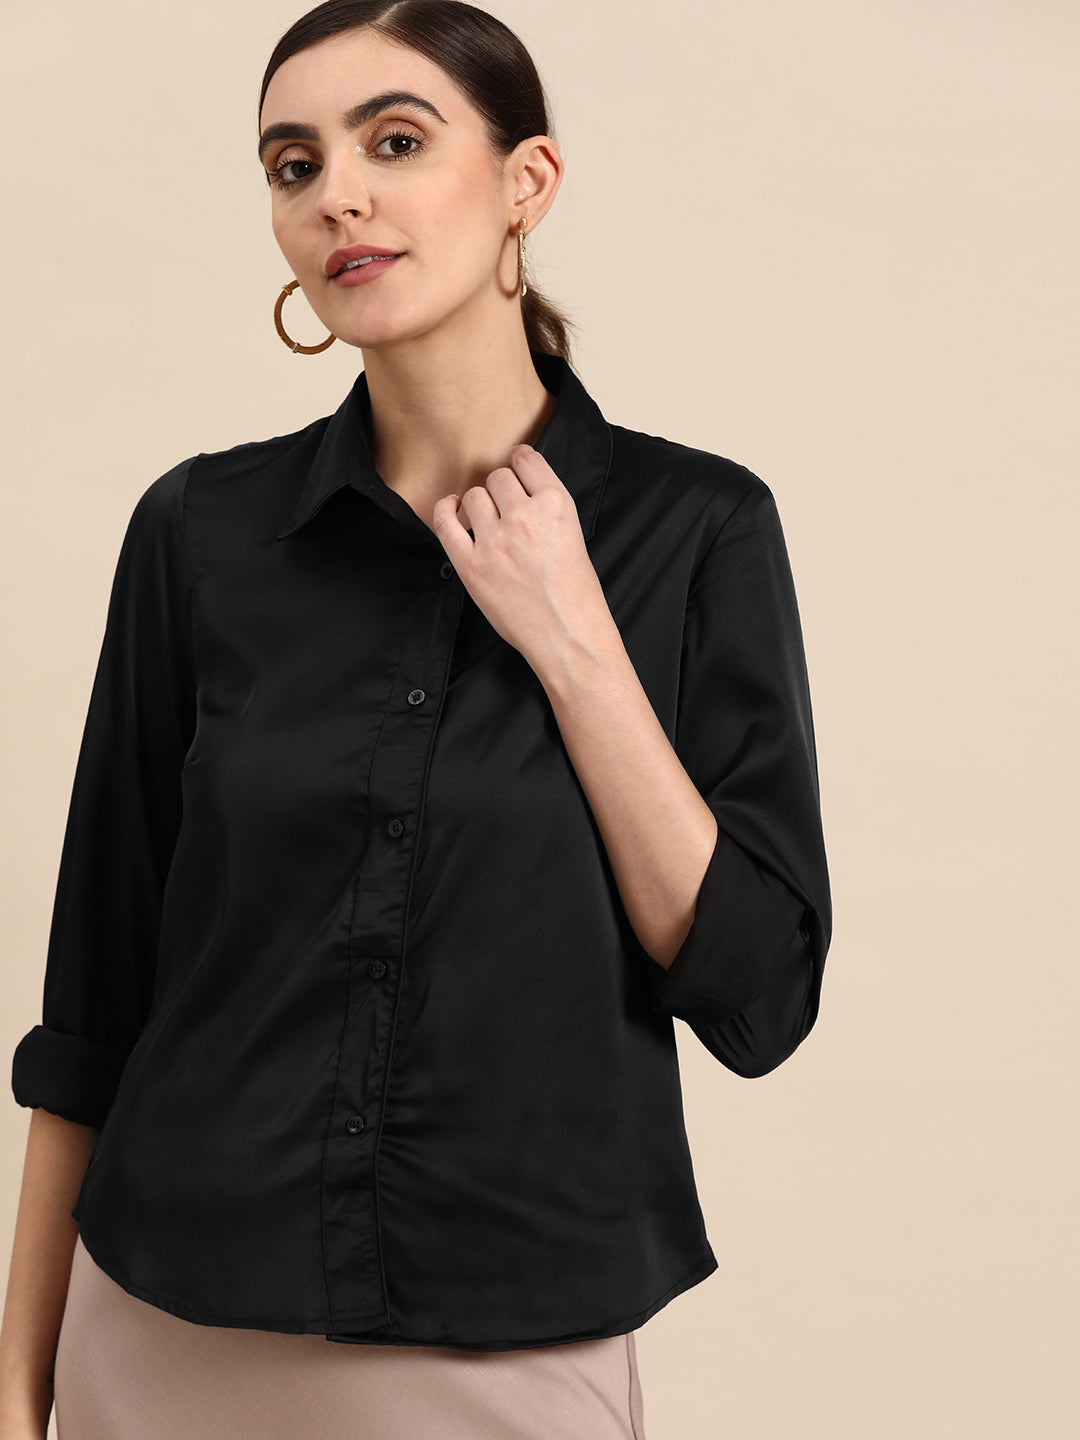 DENNISON Women Black Smart Opaque Casual Shirt